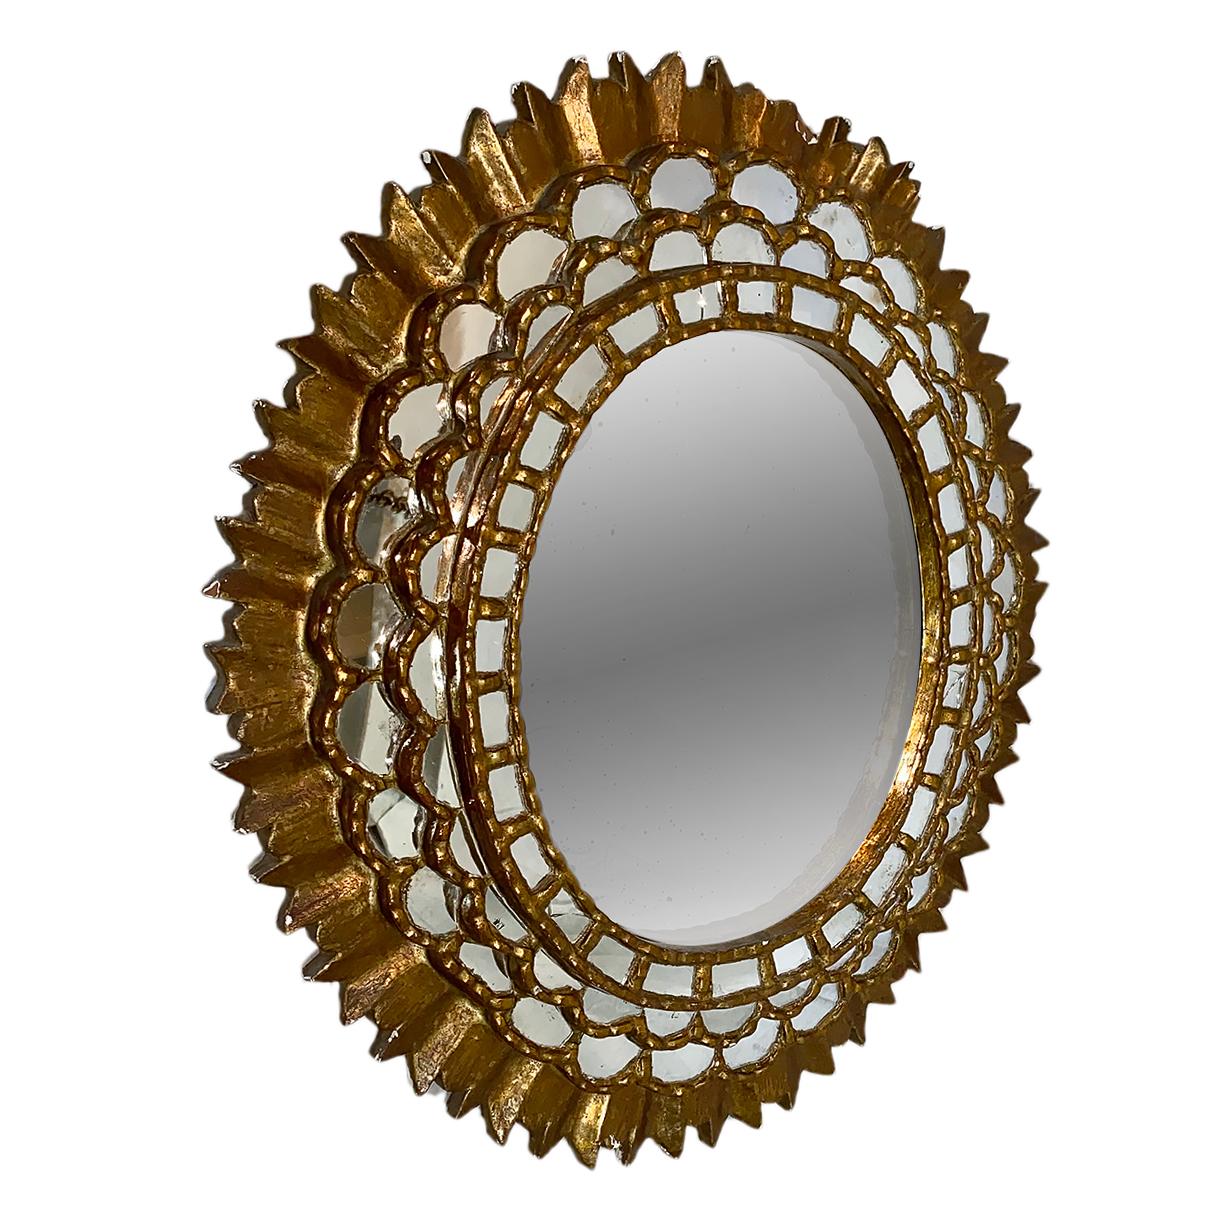 Un miroir en bois doré espagnol des années 1920.

Mesures :
Hauteur 40